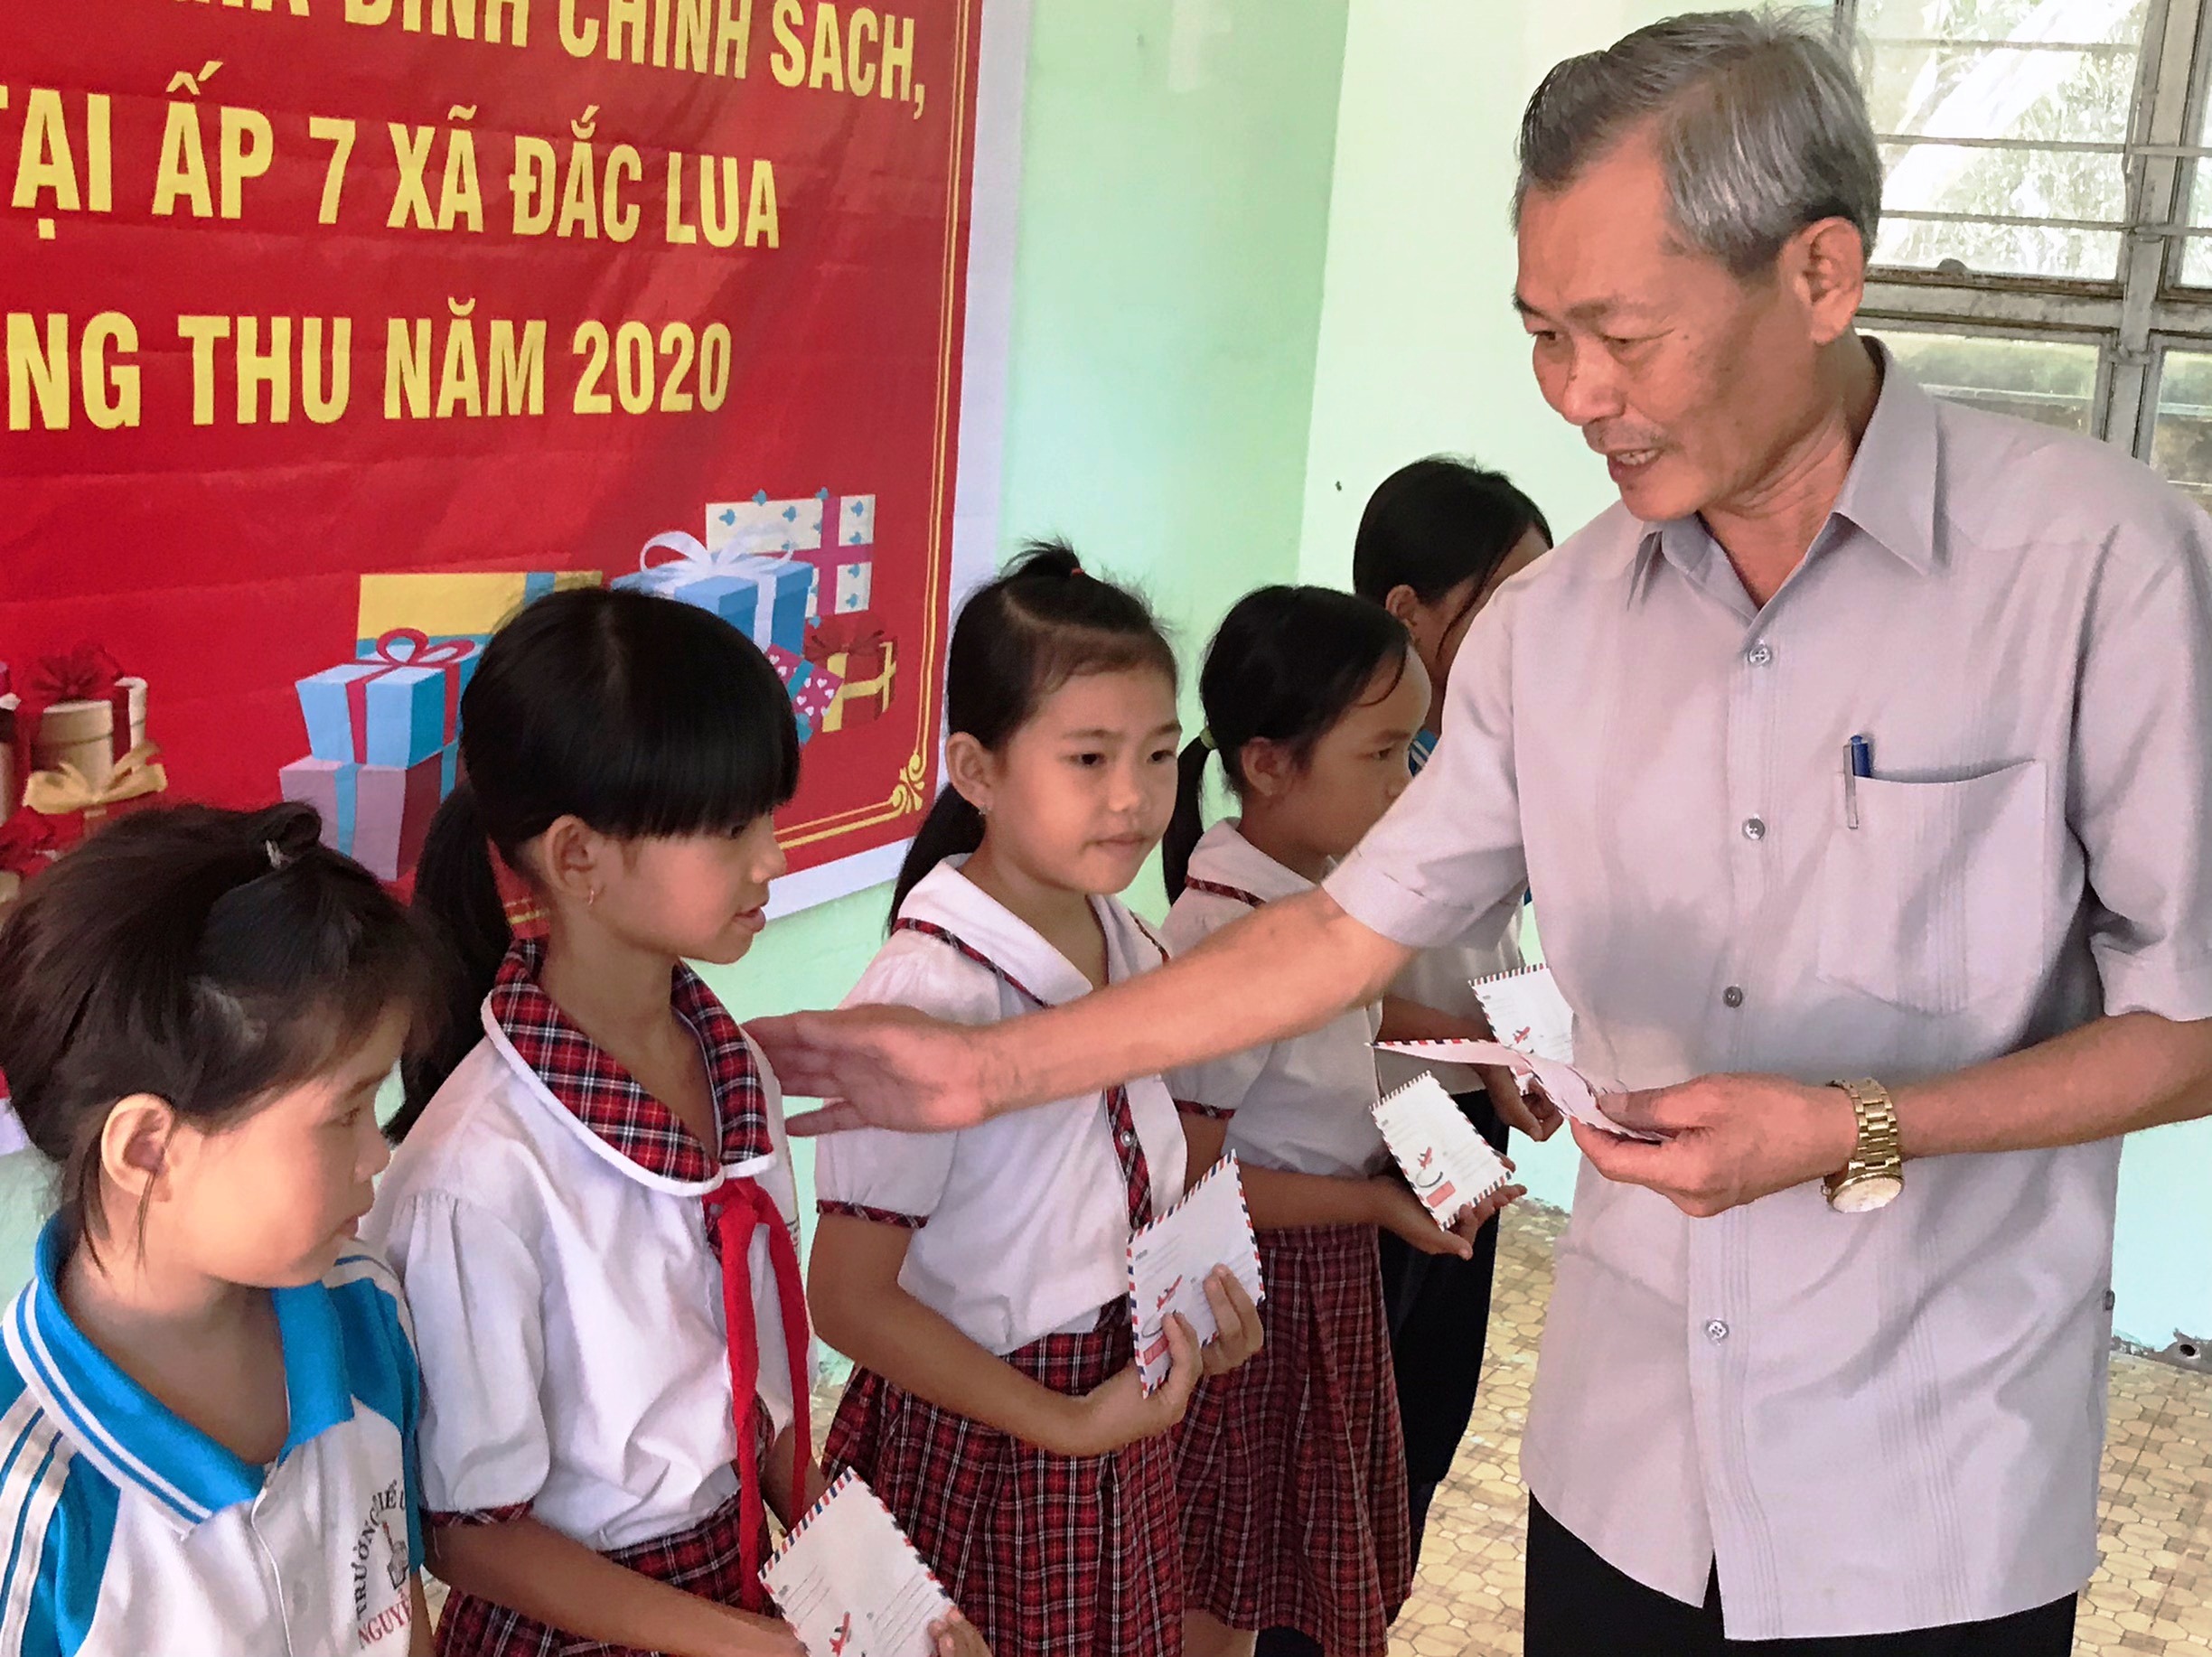 Bí thư Huyện ủy Nguyễn Trung Thành trao quà cho các em học sinh ở ấp 7 xã Đắc Lua (2).jpg